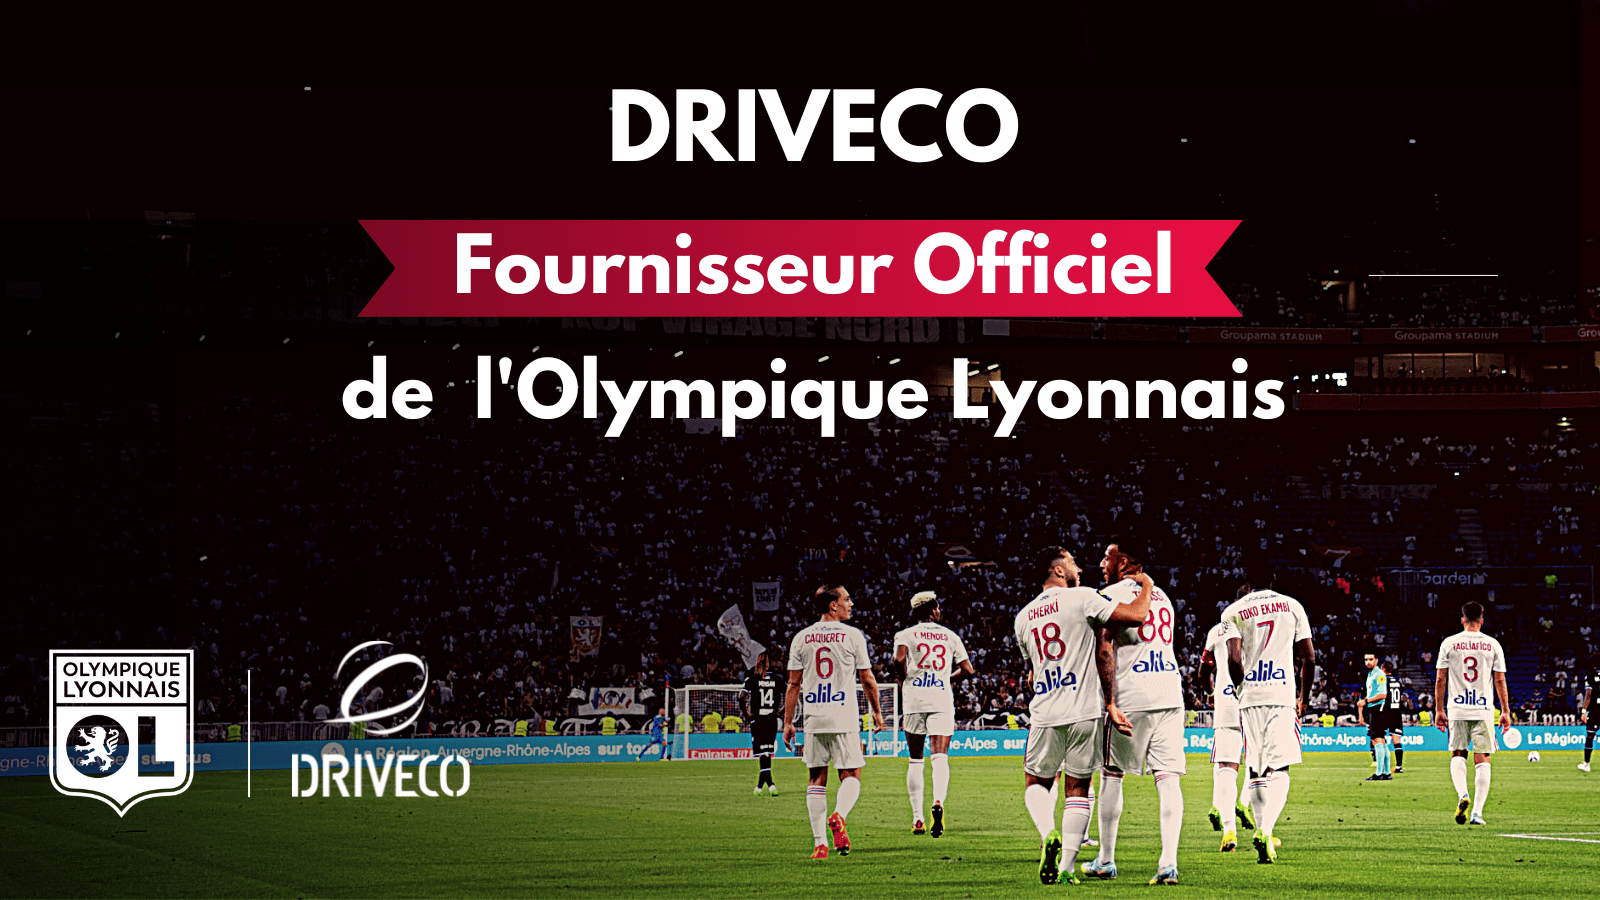 Driveco devient Fournisseur Officiel de l’Olympique Lyonnais jusqu’en 2025